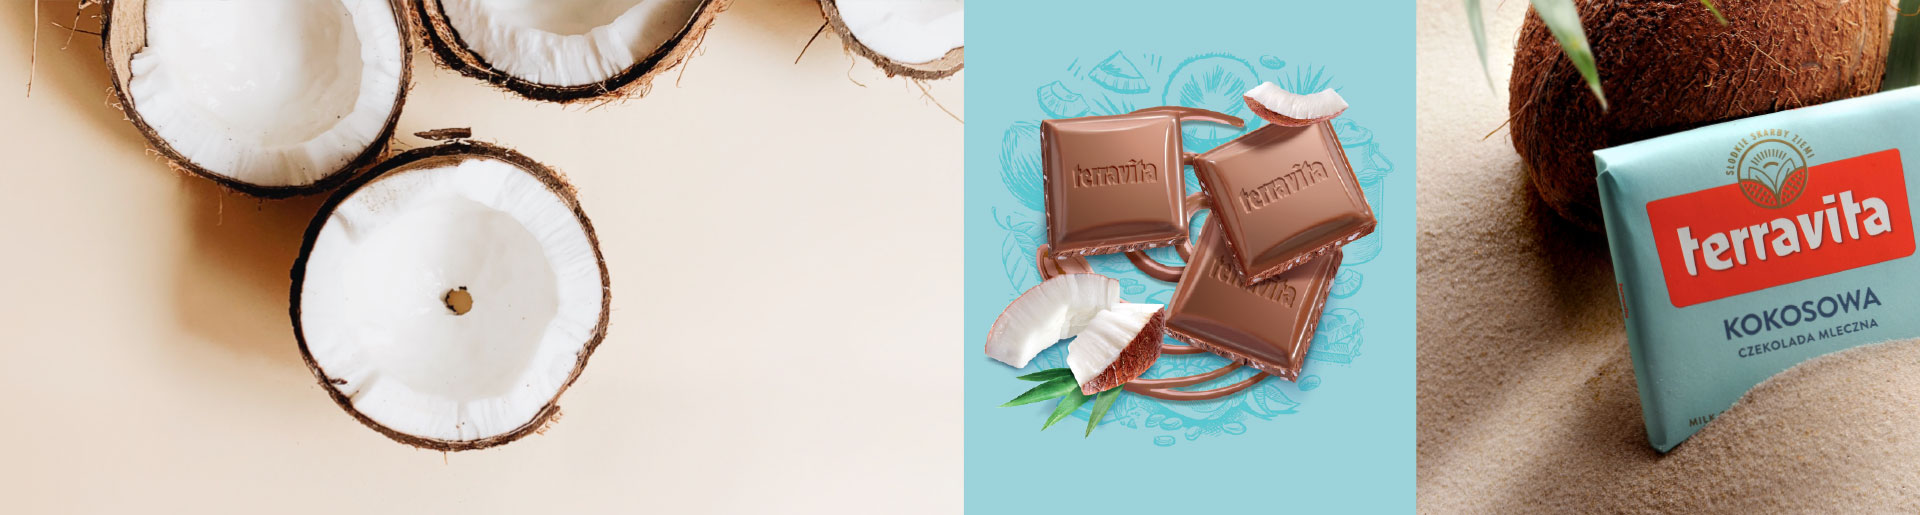 Czekolada Terravita kokosowa - zestawienie elementów budujących świat marki: zdjęcie kokosa, ilustracja kostek czekolady w nowym ułożeniu, zdjęcie nowego opakowania z fokusem na nowy logotyp.